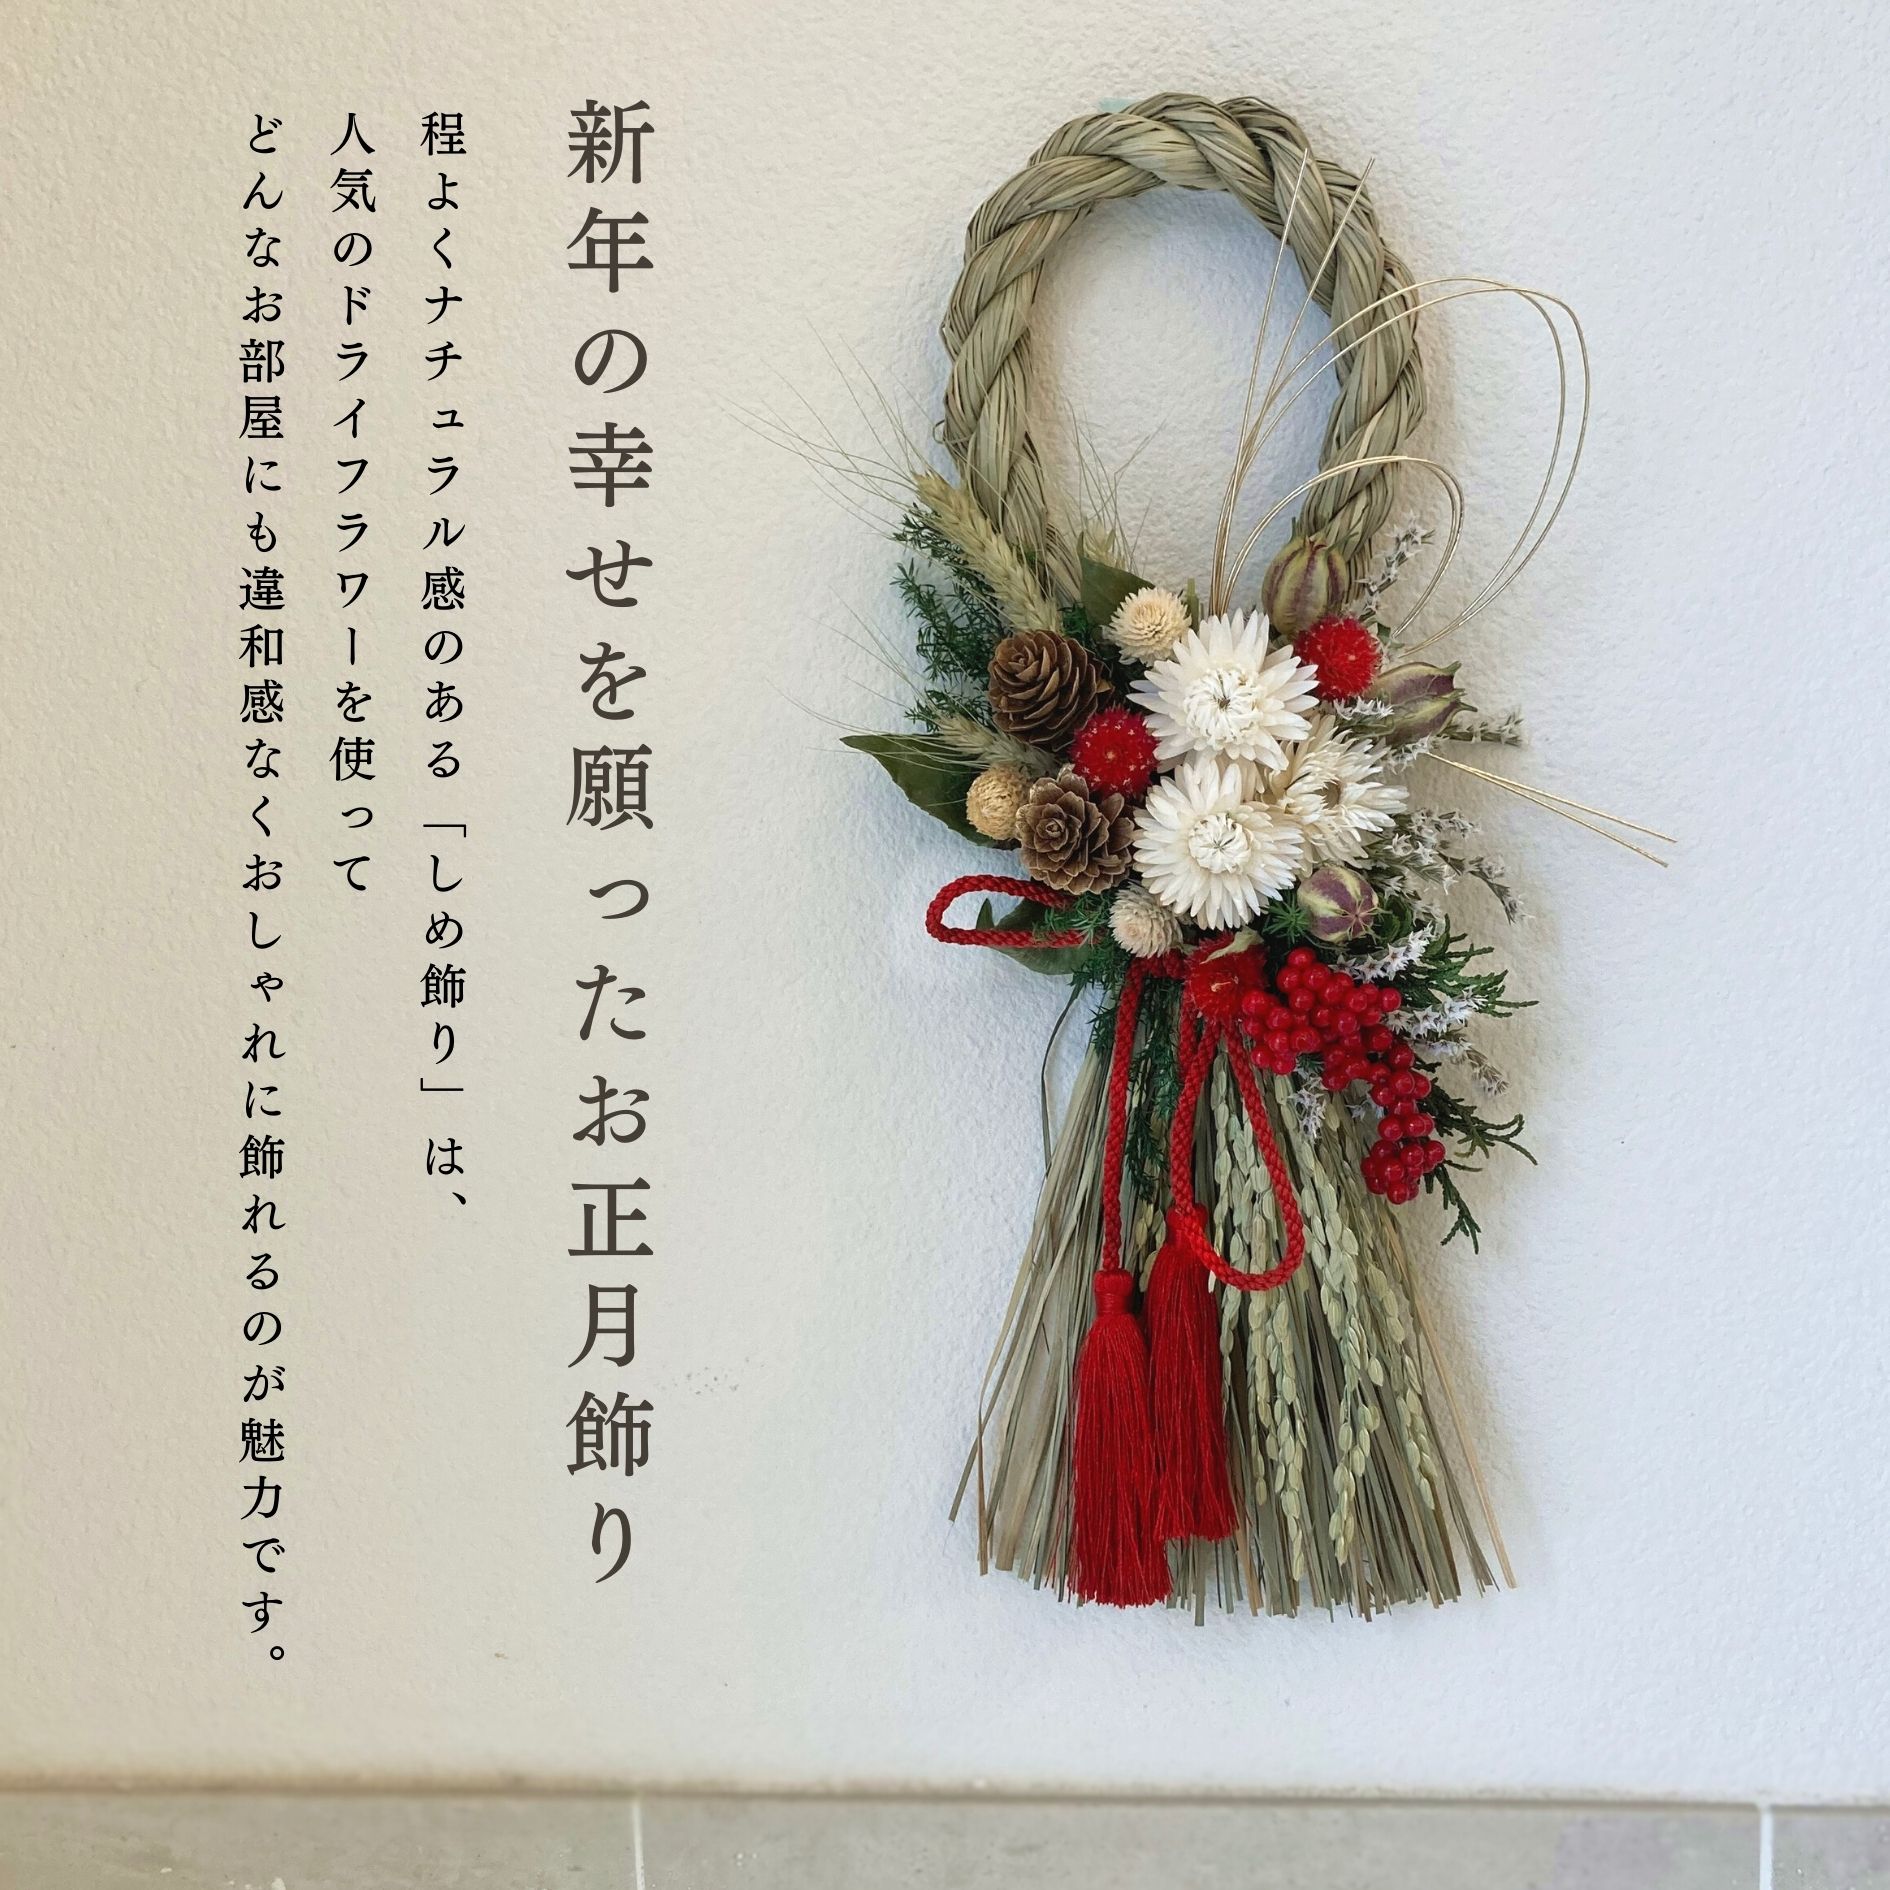 68.長野より自家栽培ドライフラワー含む しめ縄 正月飾り 松飾り 